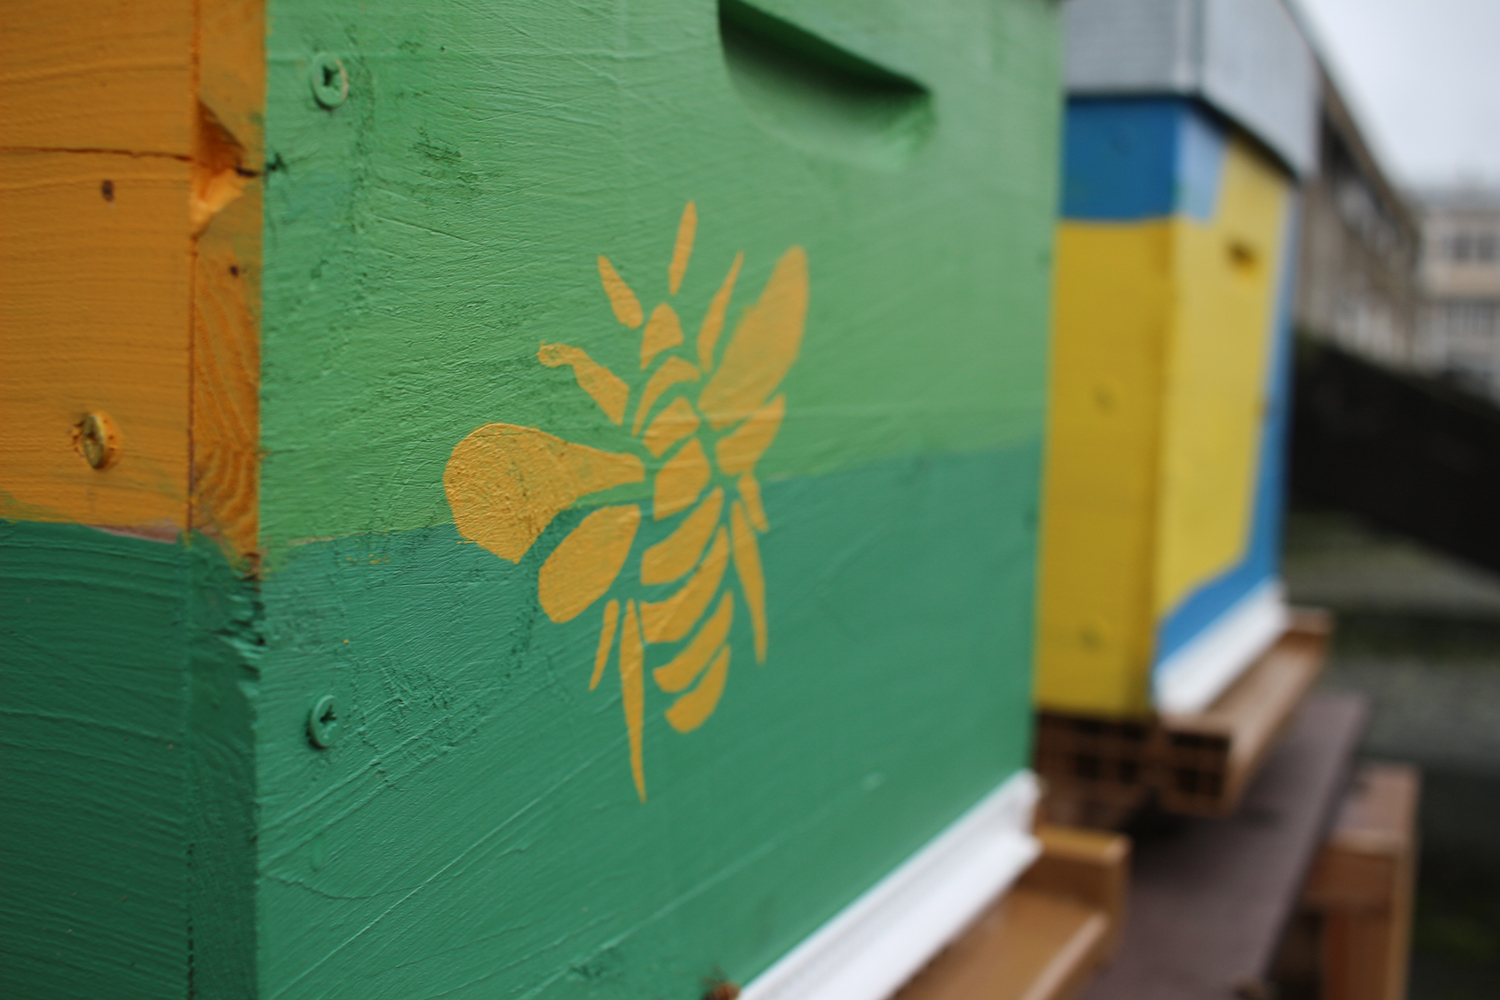 Sur les ruches peintes en vert, jaune ou bleu, des abeilles pochoirs ont été dessinées © Globe Reporters